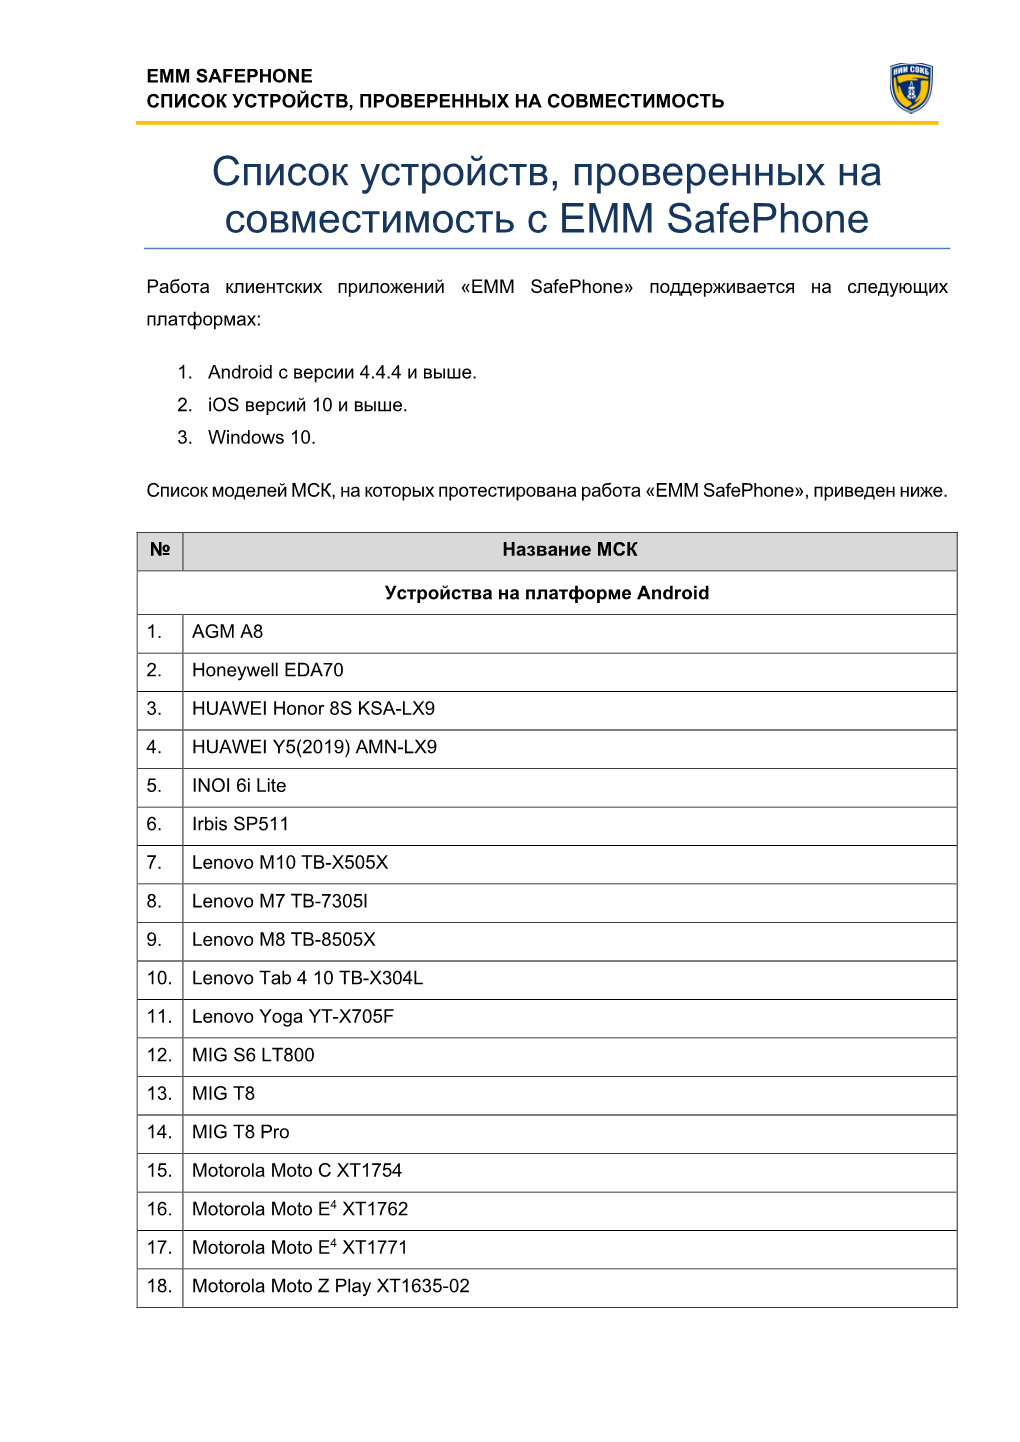 Список Устройств, Проверенных На Совместимость С EMM Safephone